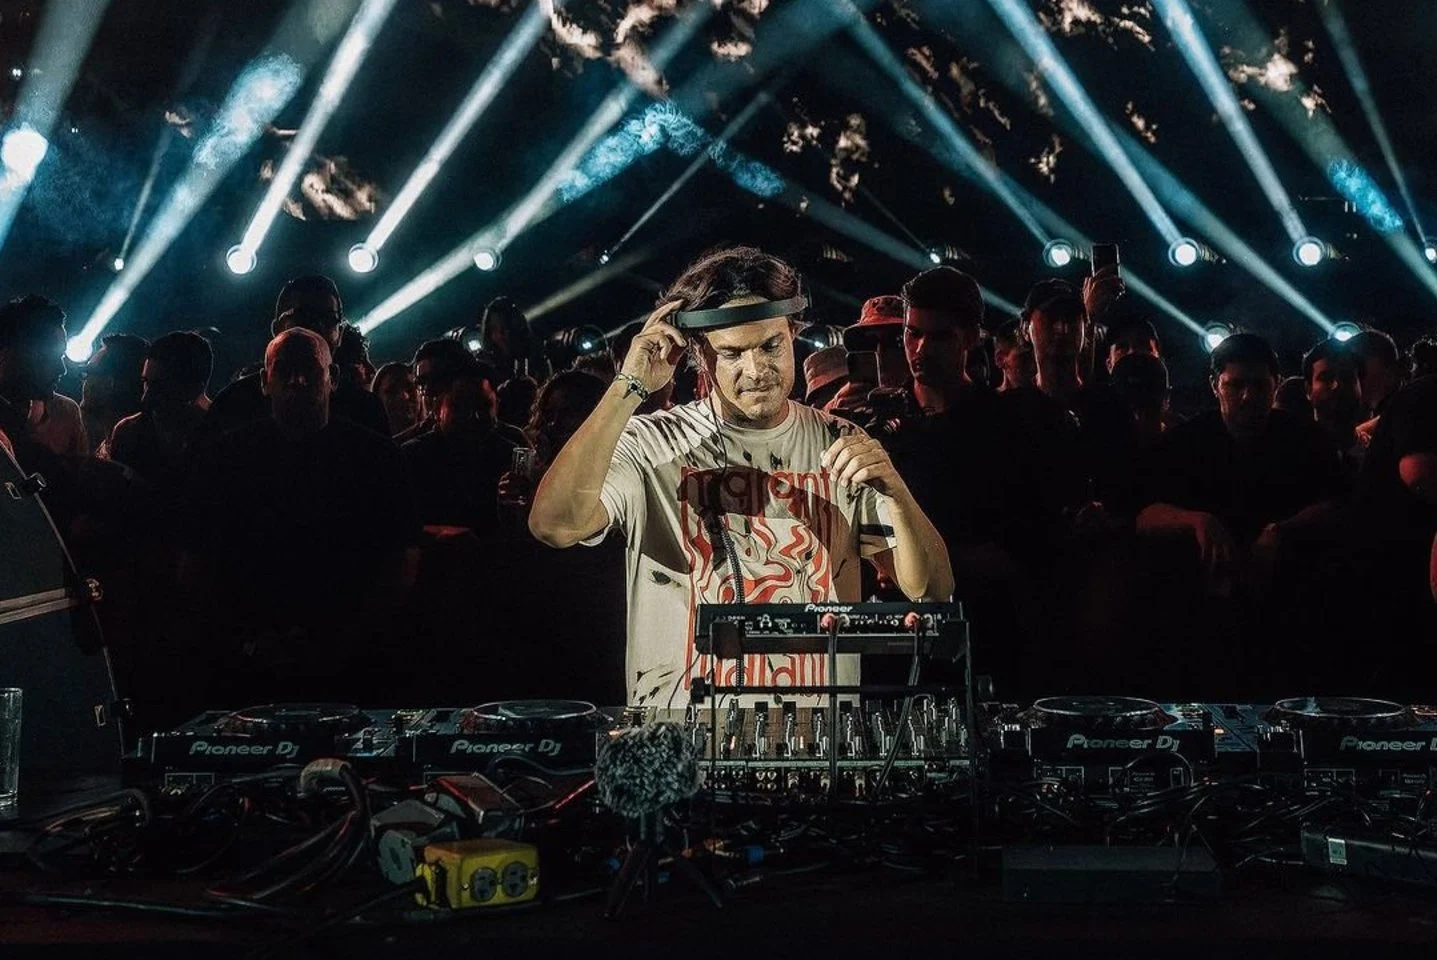 Į Vilnių atvyksta tarptautinė techno muzikos žvaigždė DJ Argy – MadeinVilnius.lt